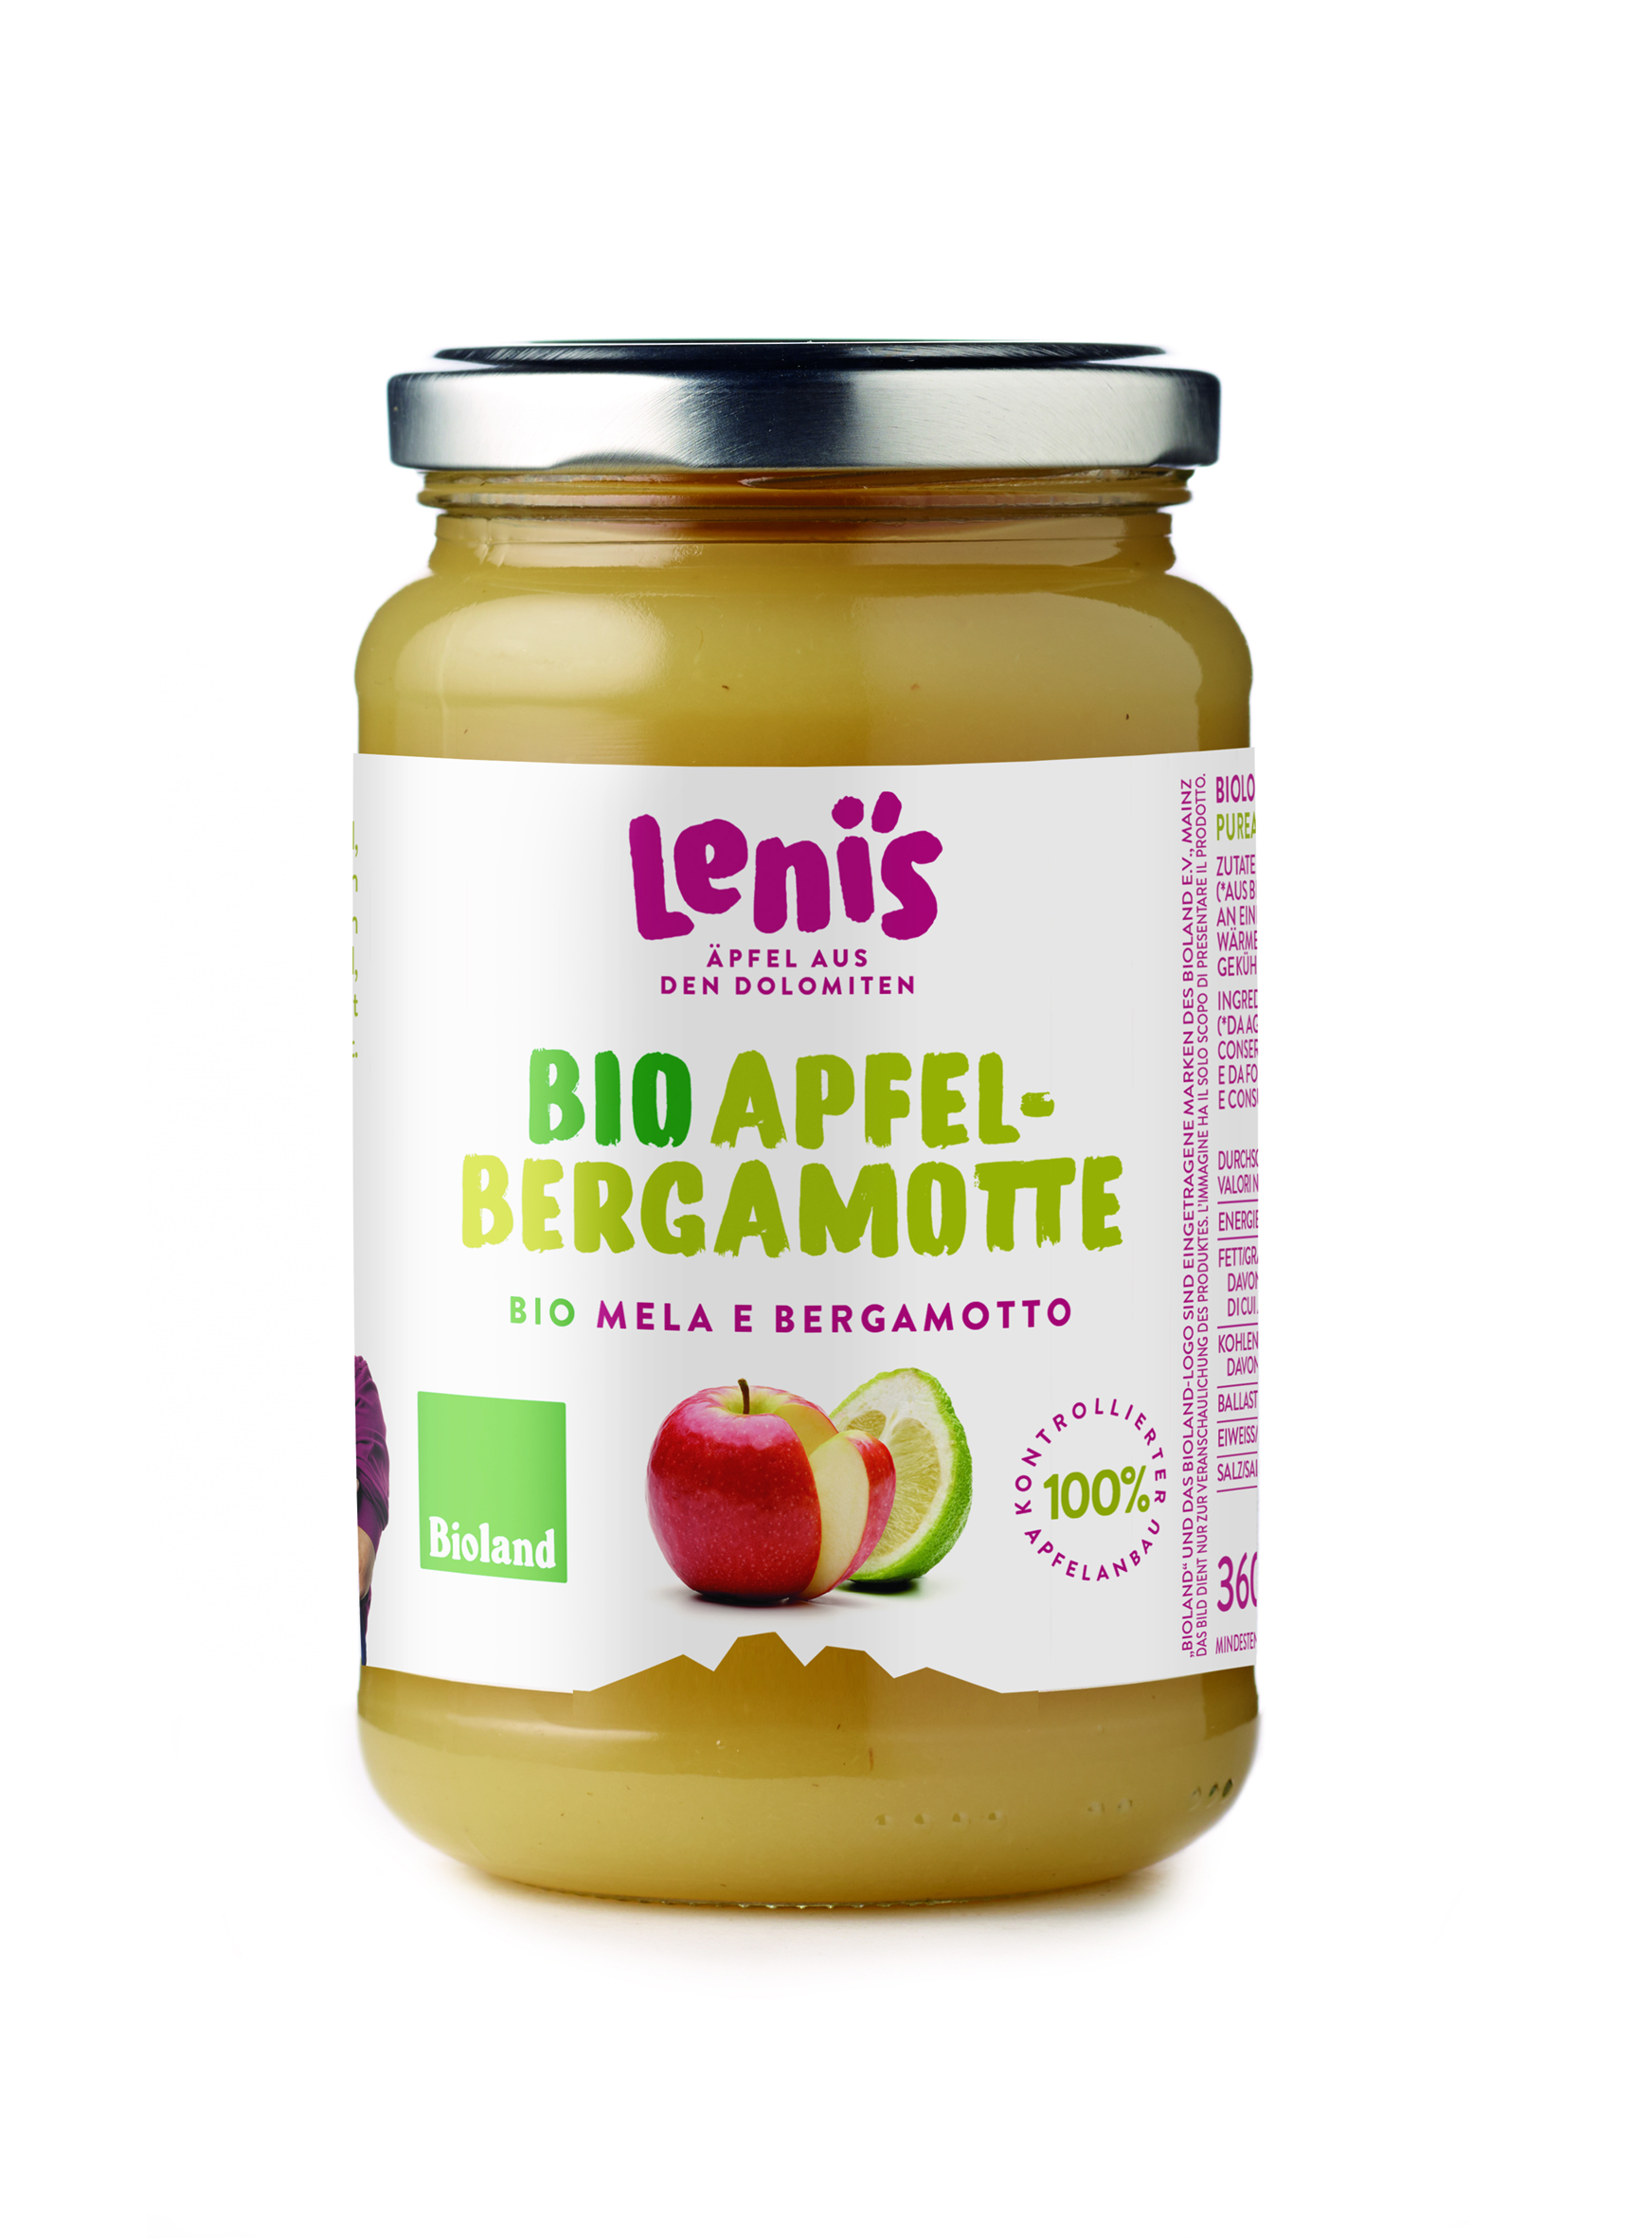 Apfel- Bergamottemus Lenis BIO 360g